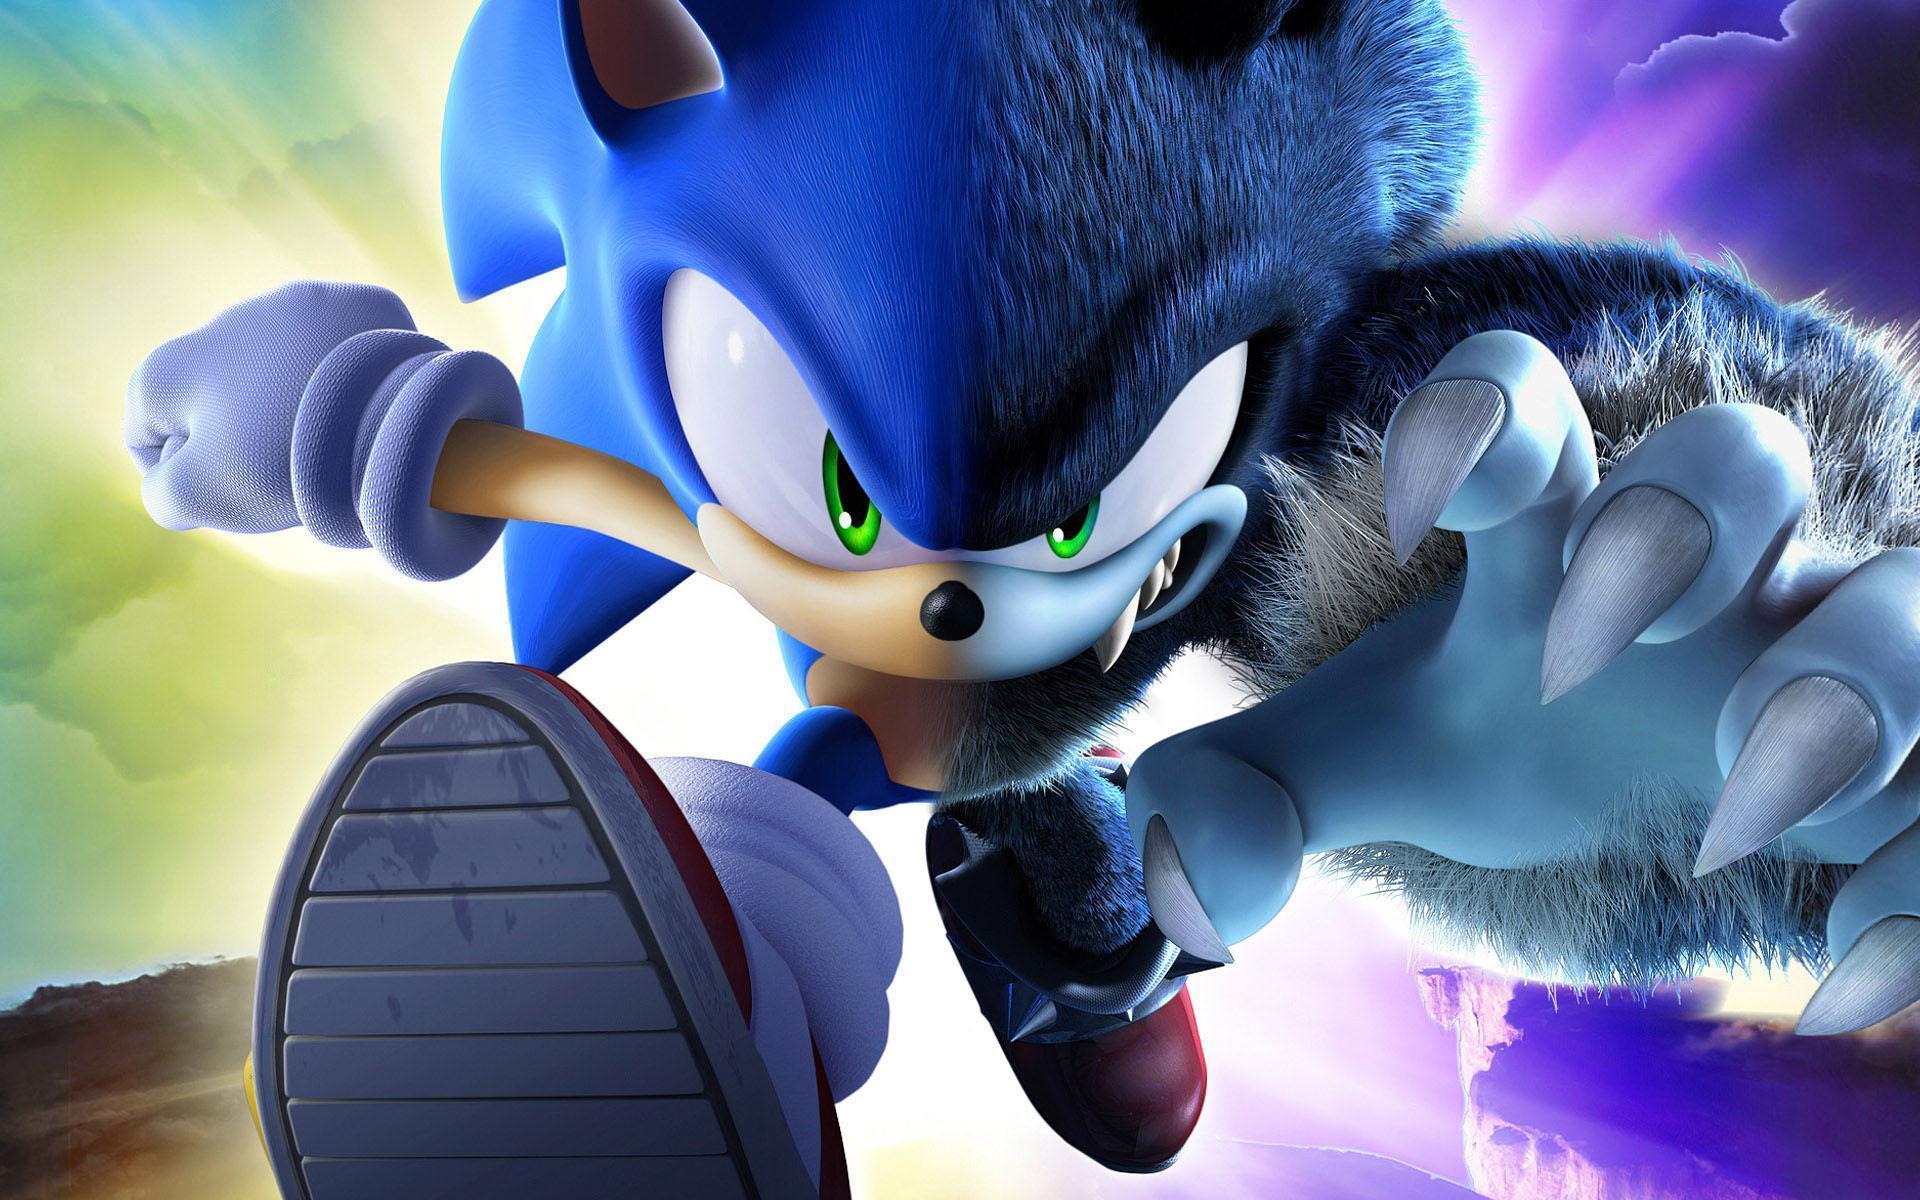 Sonic Wallpapers: Bộ sưu tập hình nền Sonic sẽ làm cho màn hình của bạn trở nên đẹp hơn bao giờ hết với các hình ảnh của các nhân vật Sonic và bạn bè của họ. Hãy xem để chọn cho mình bức hình nền ưng ý nhất nhé!